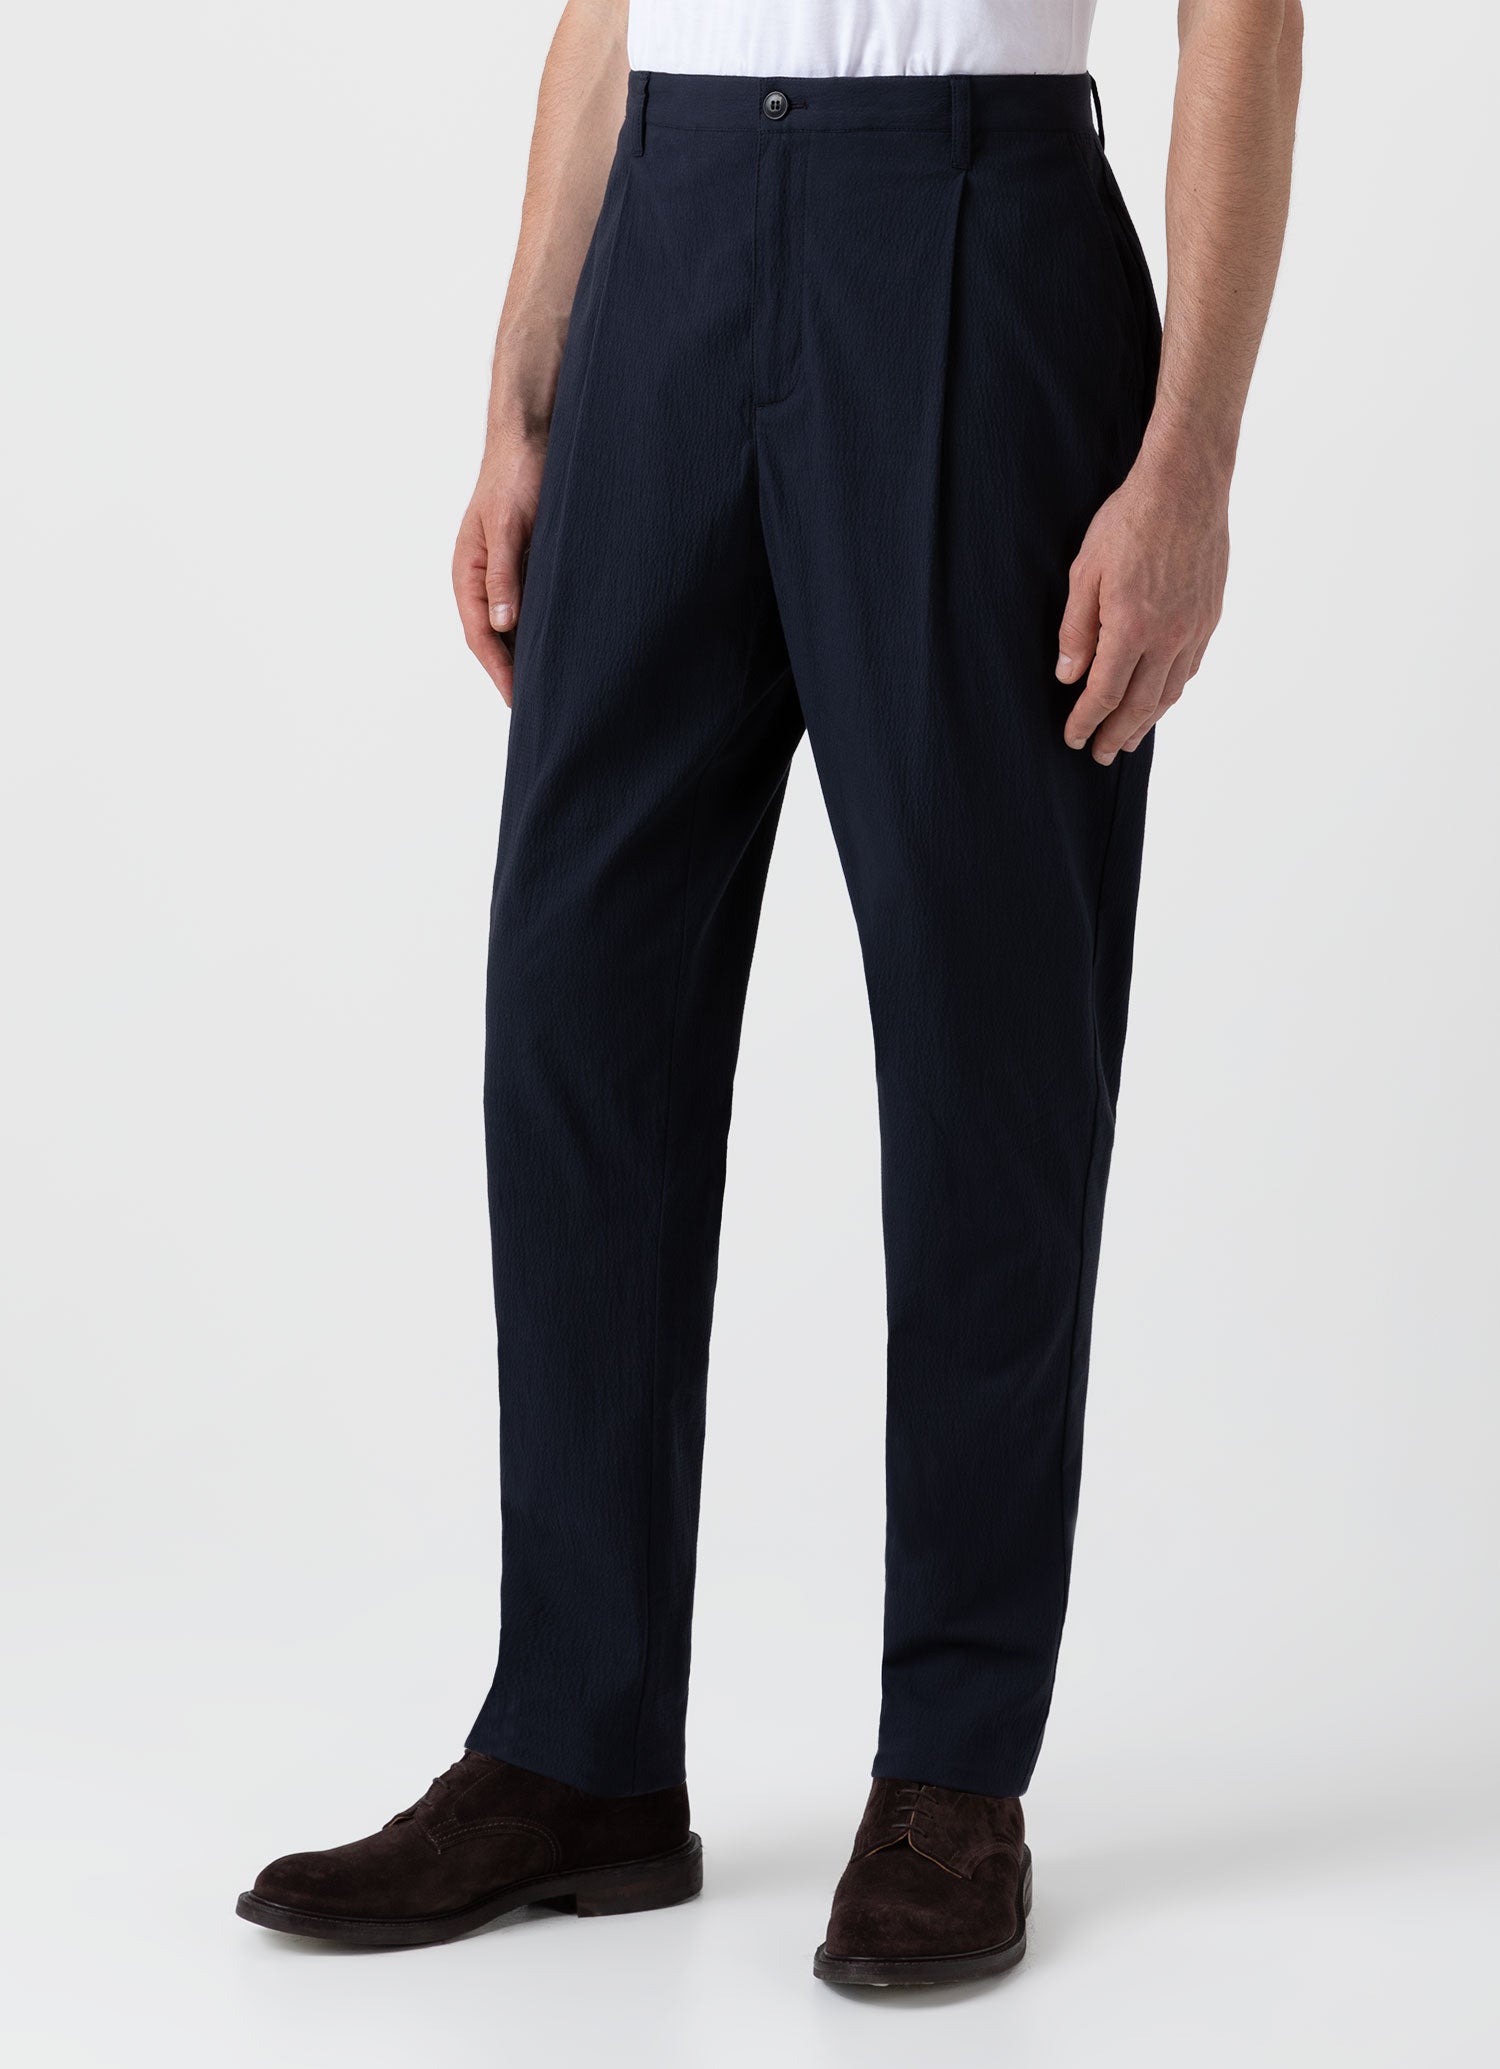 Men's Pleated Seersucker Trouser in Navy | Sunspel